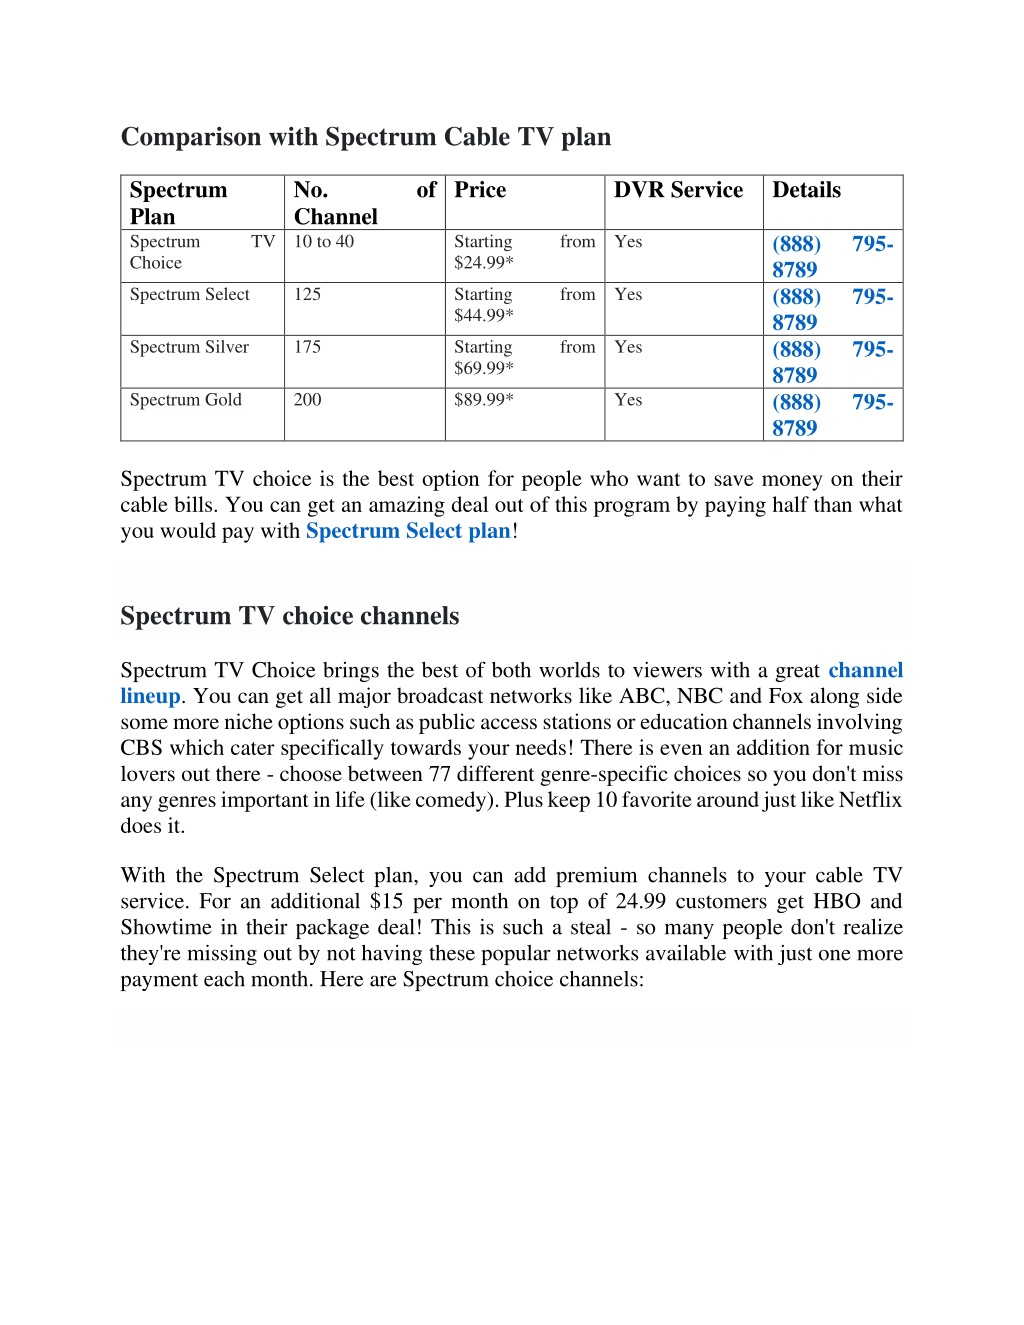 spectrum tv choice pick 10 channels